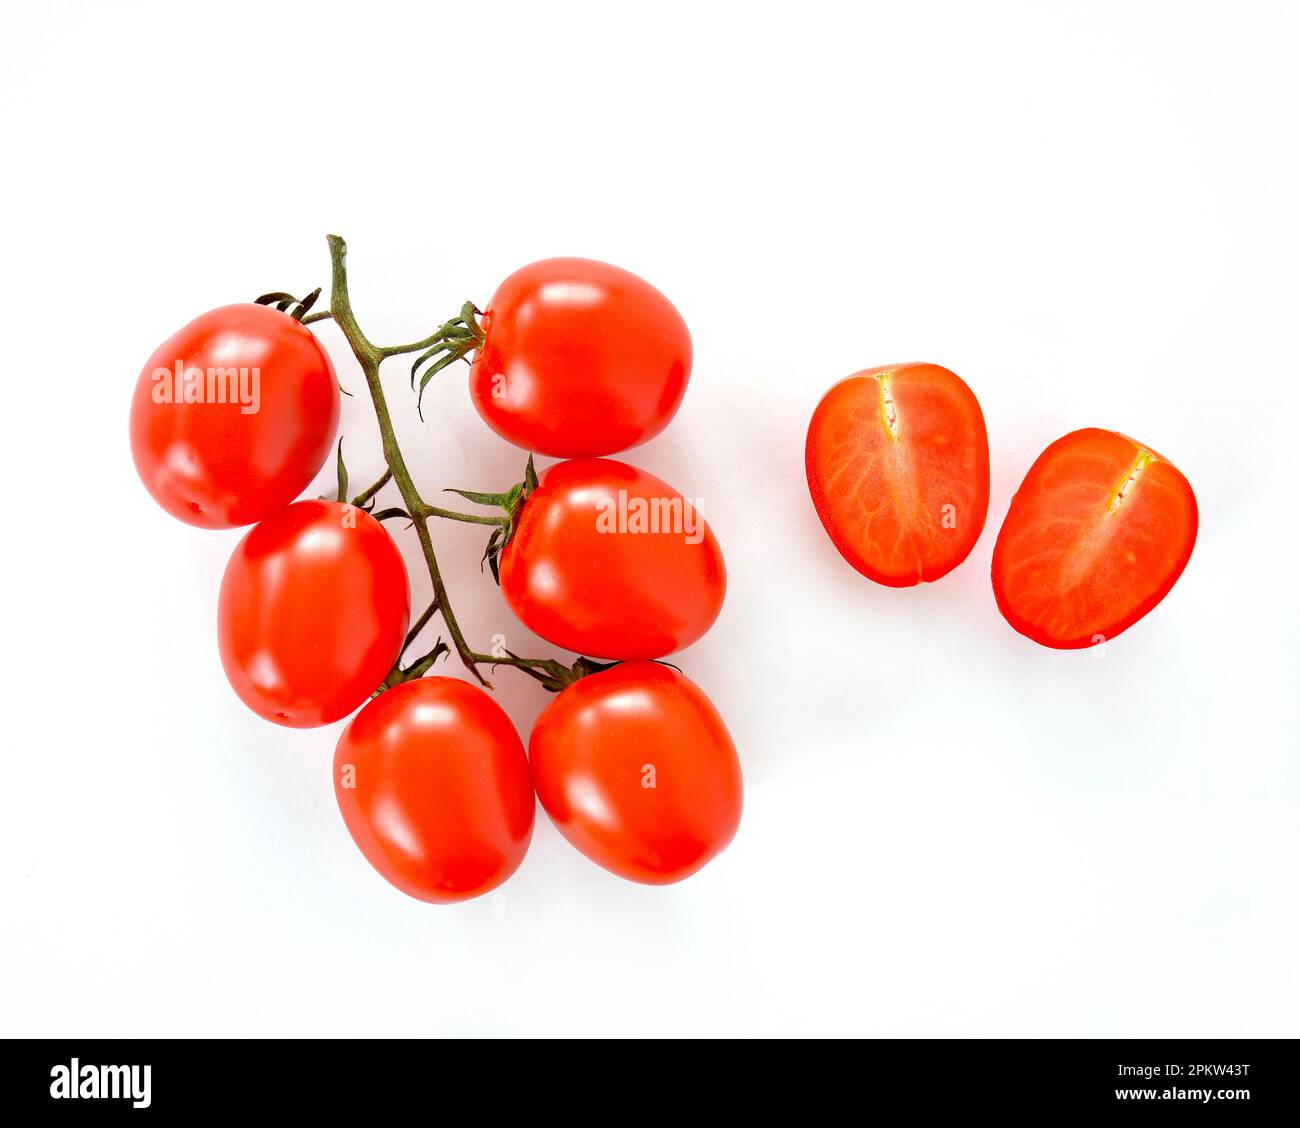 Duet Baby Romanella Tomaten sind kleine eiförmige, mehrfarbige Tomaten in flacher Laienzusammensetzung auf weißem Hintergrund. Horizontales Format mit Platz für Stockfoto